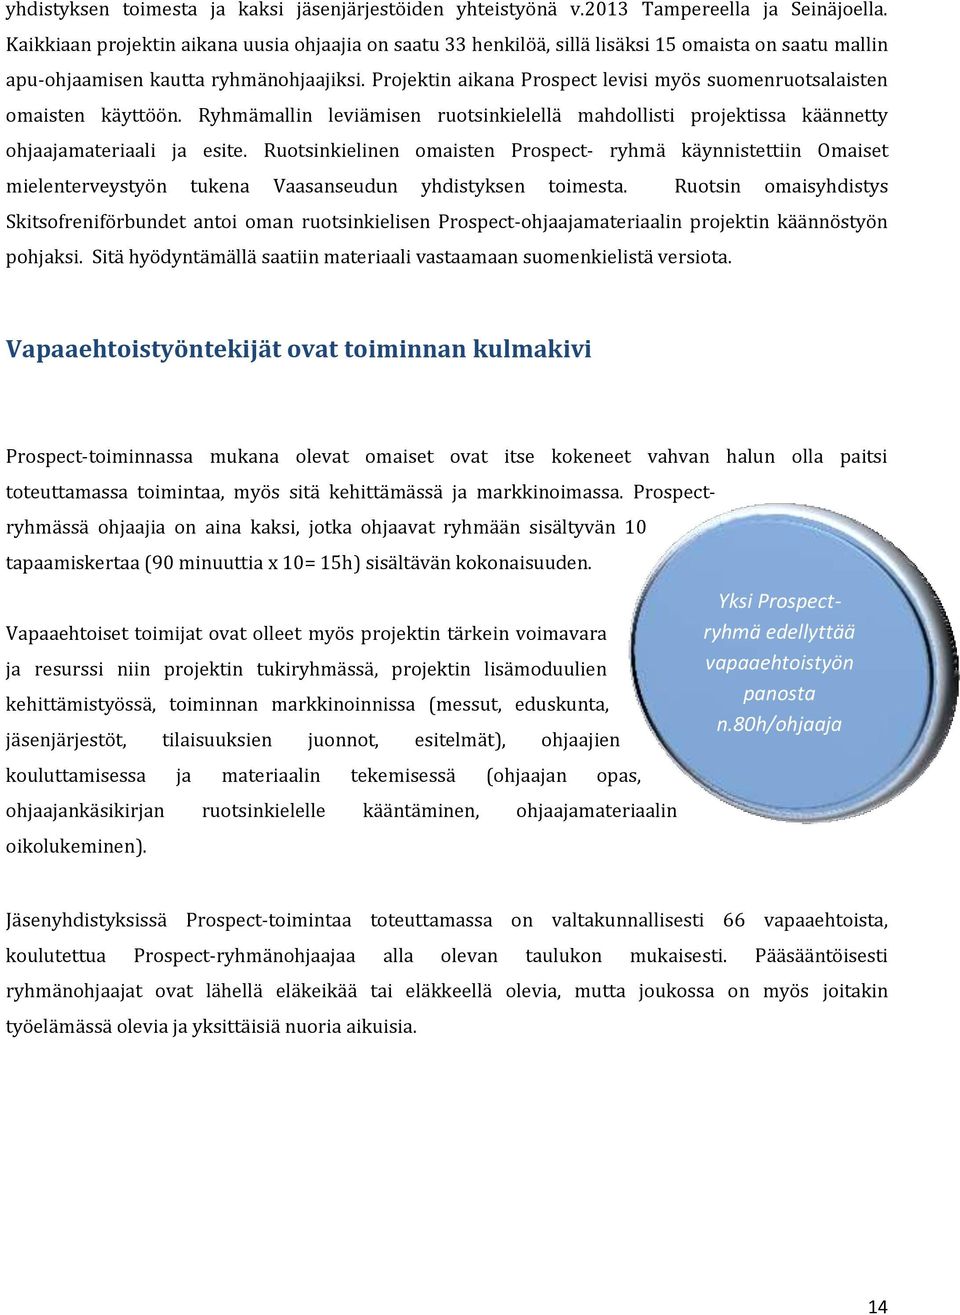 Projektin aikana Prospect levisi myös suomenruotsalaisten omaisten käyttöön. Ryhmämallin leviämisen ruotsinkielellä mahdollisti projektissa käännetty ohjaajamateriaali ja esite.